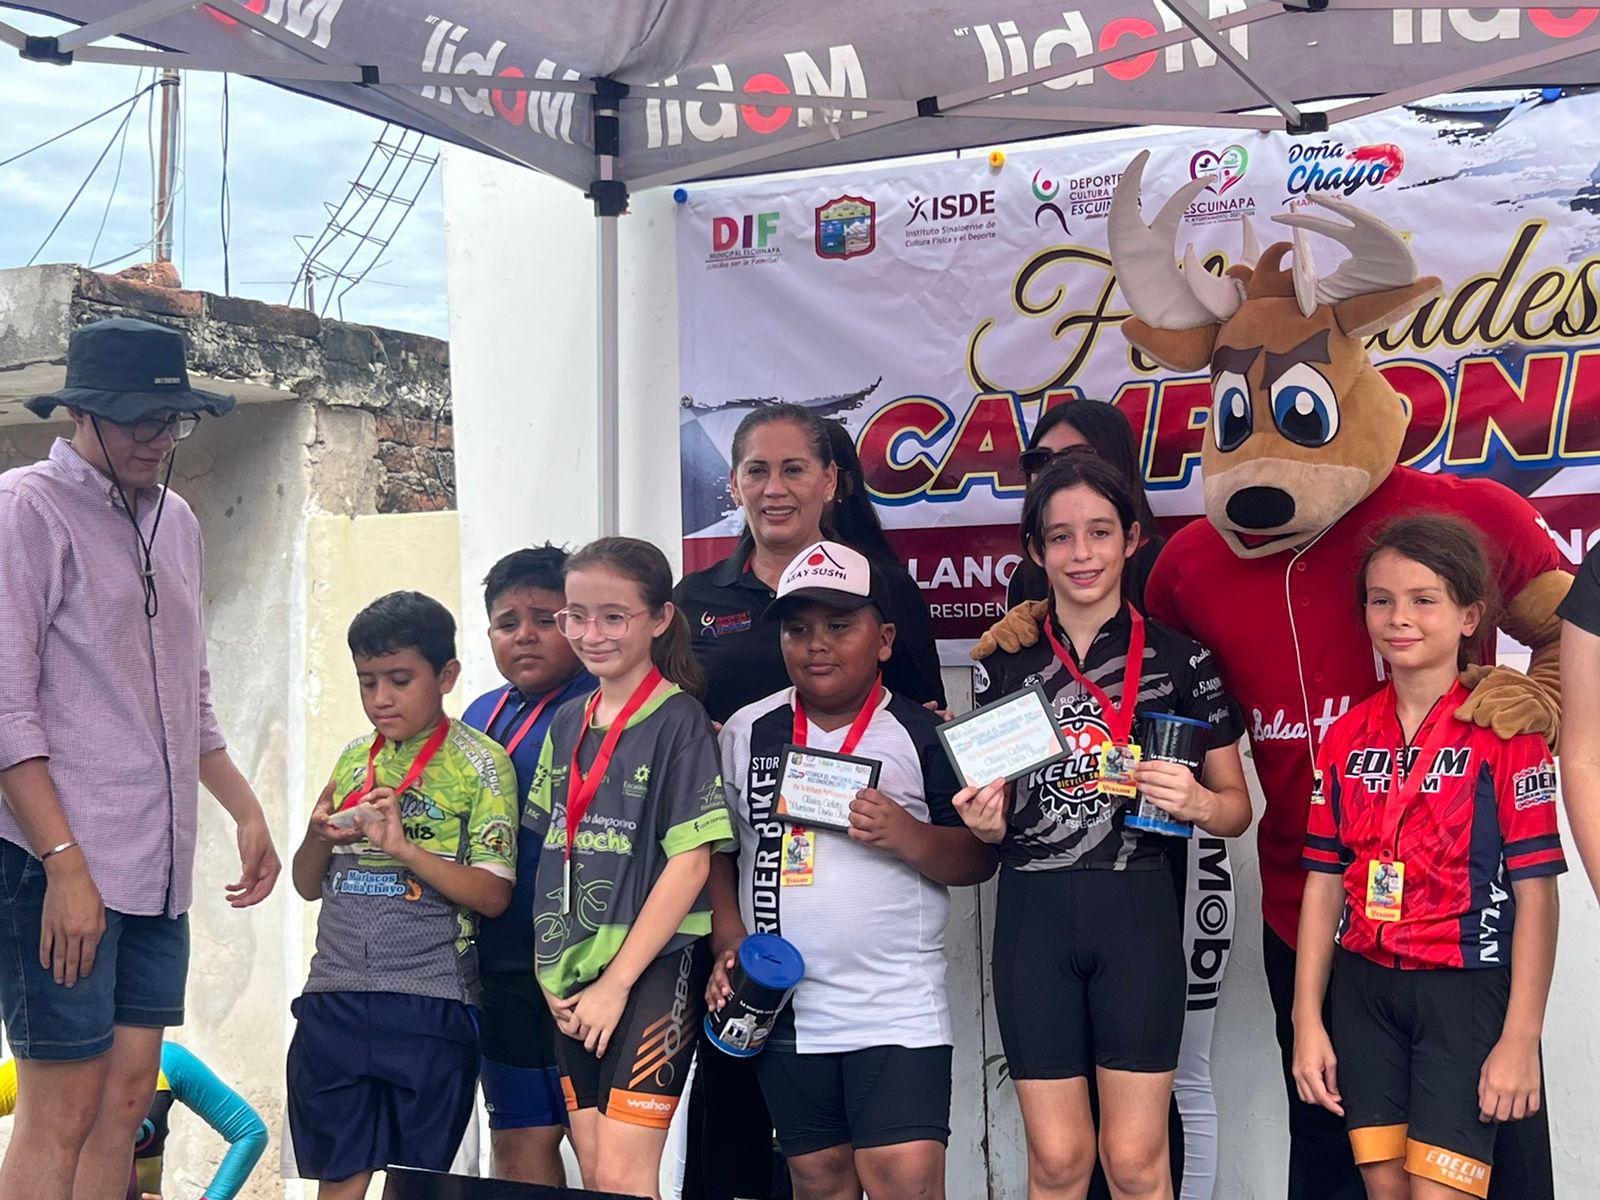 $!Nutrida participación tiene la carrera ciclista ‘Mariscos Doña Chayo’